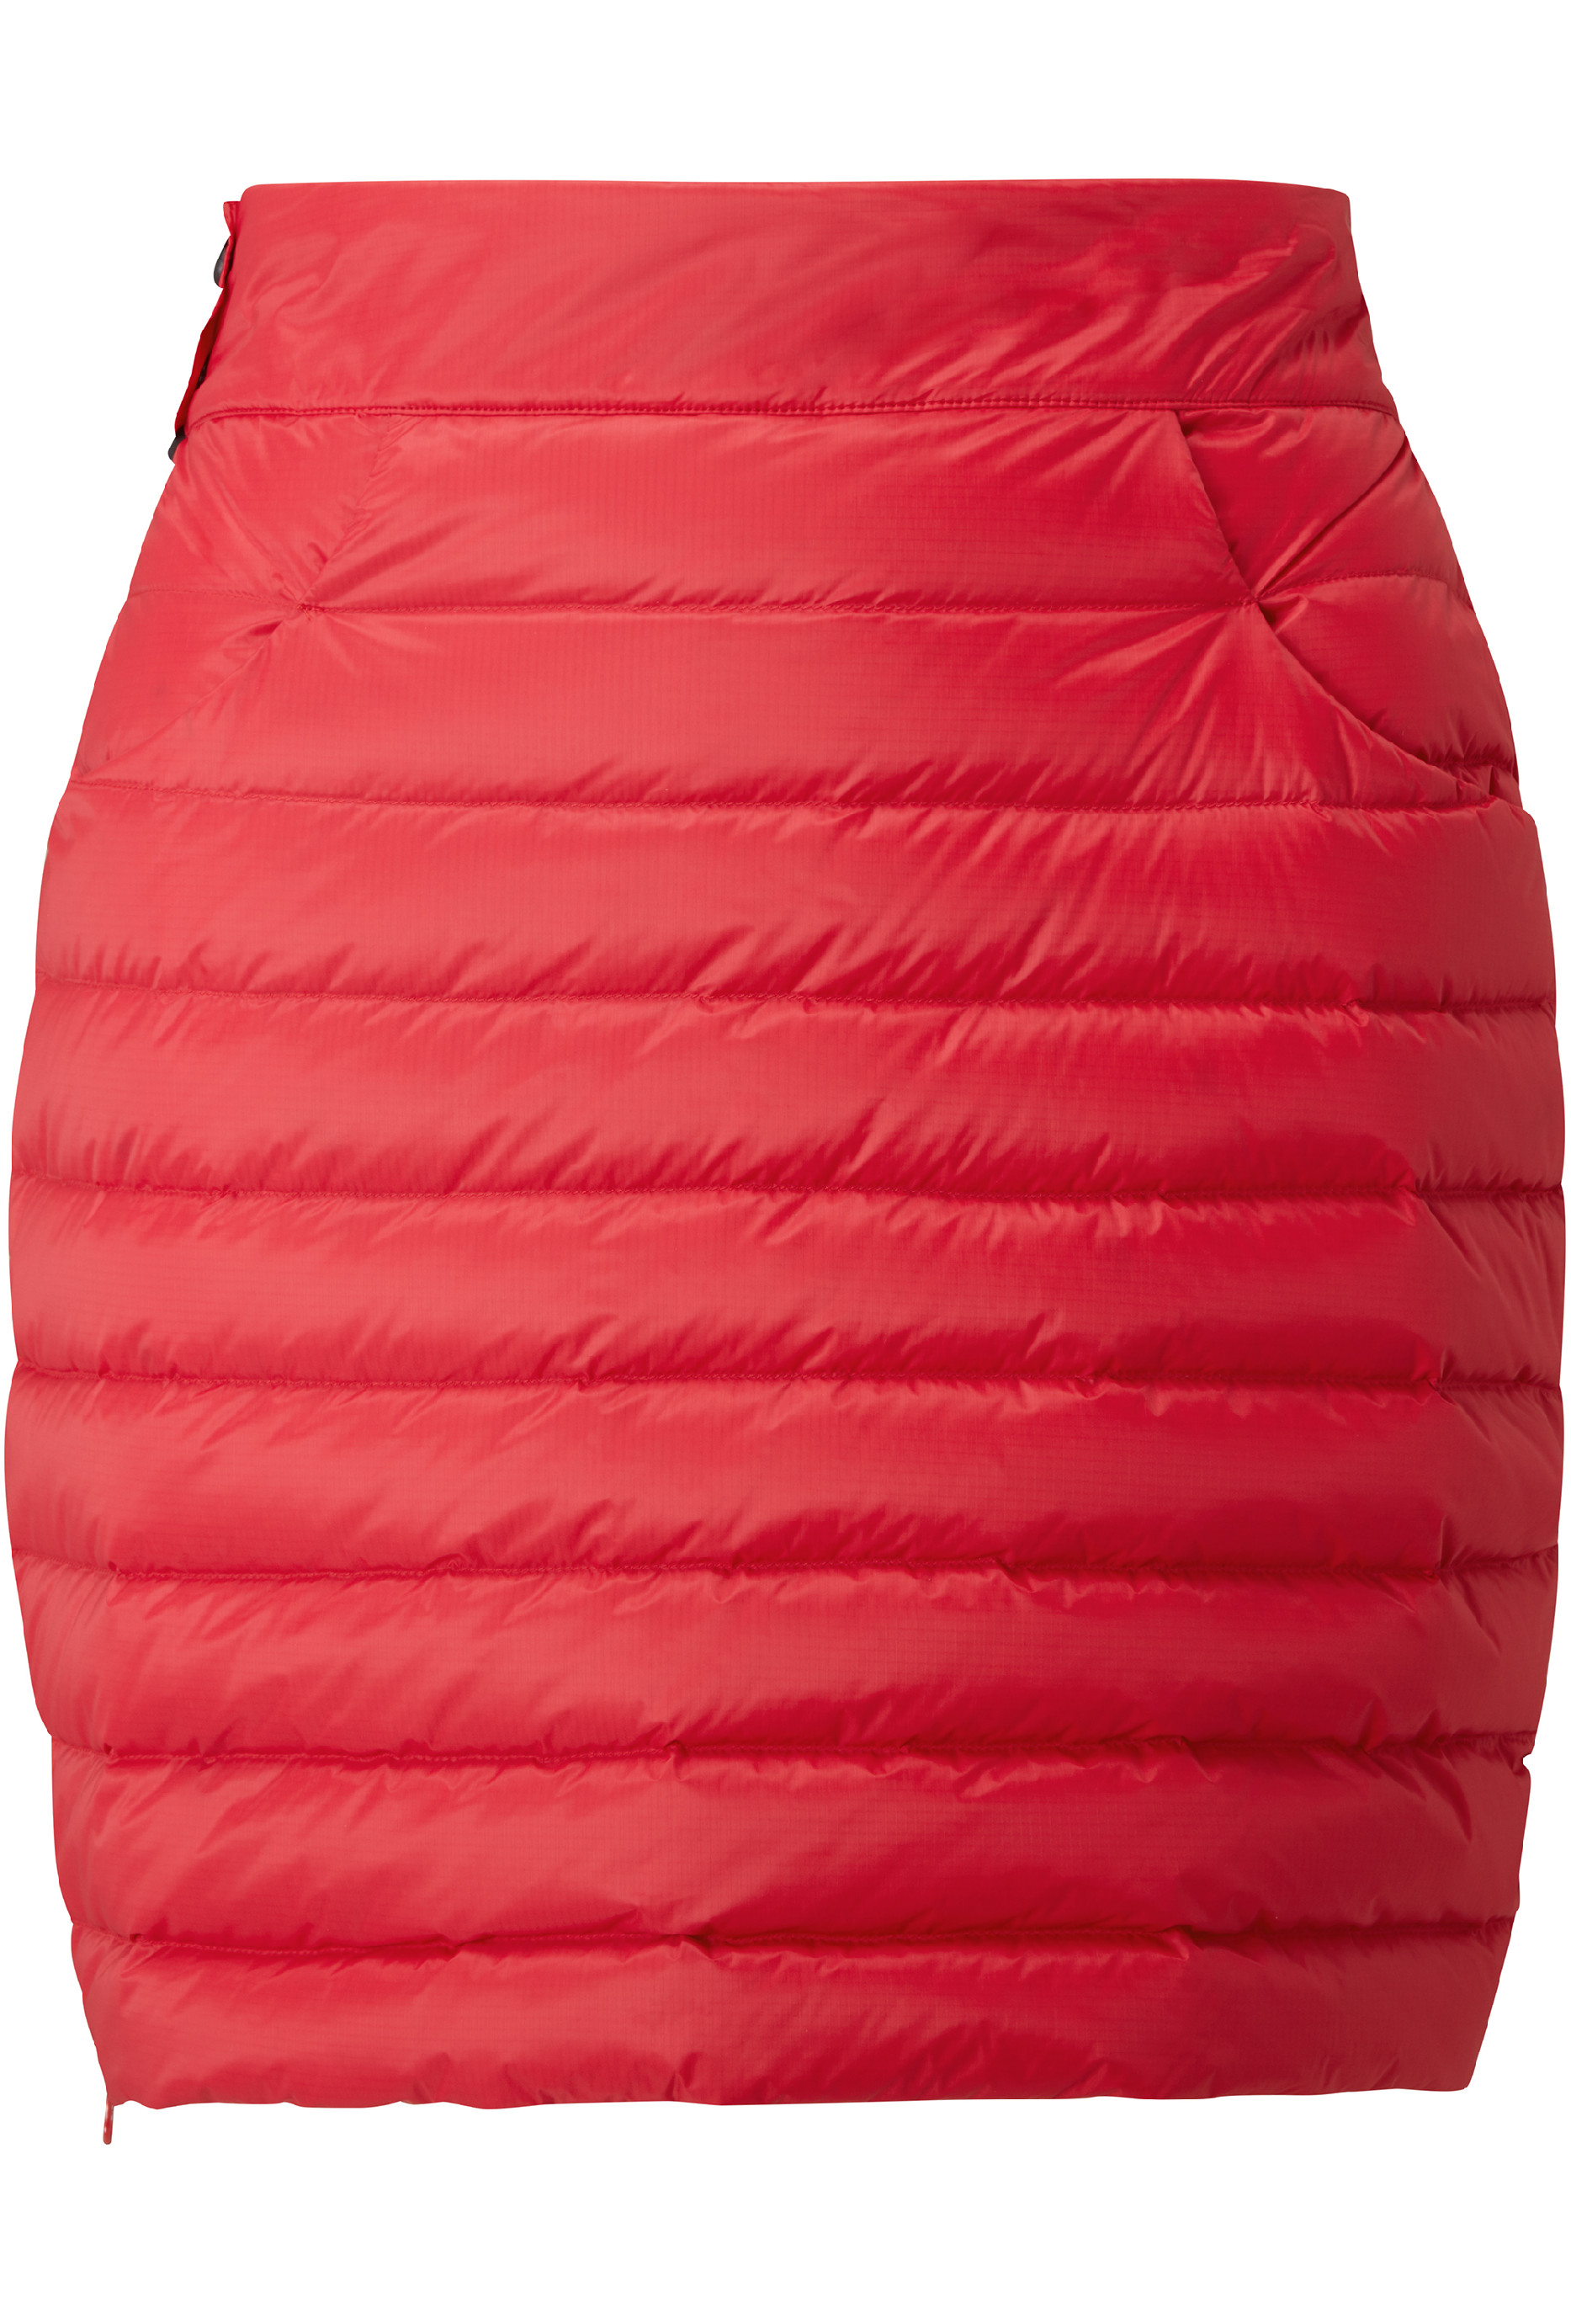 Mountain Equipment dámská péřová sukně Frostline Wmns Skirt Barva: Capsicum Red, Velikost: 14/L